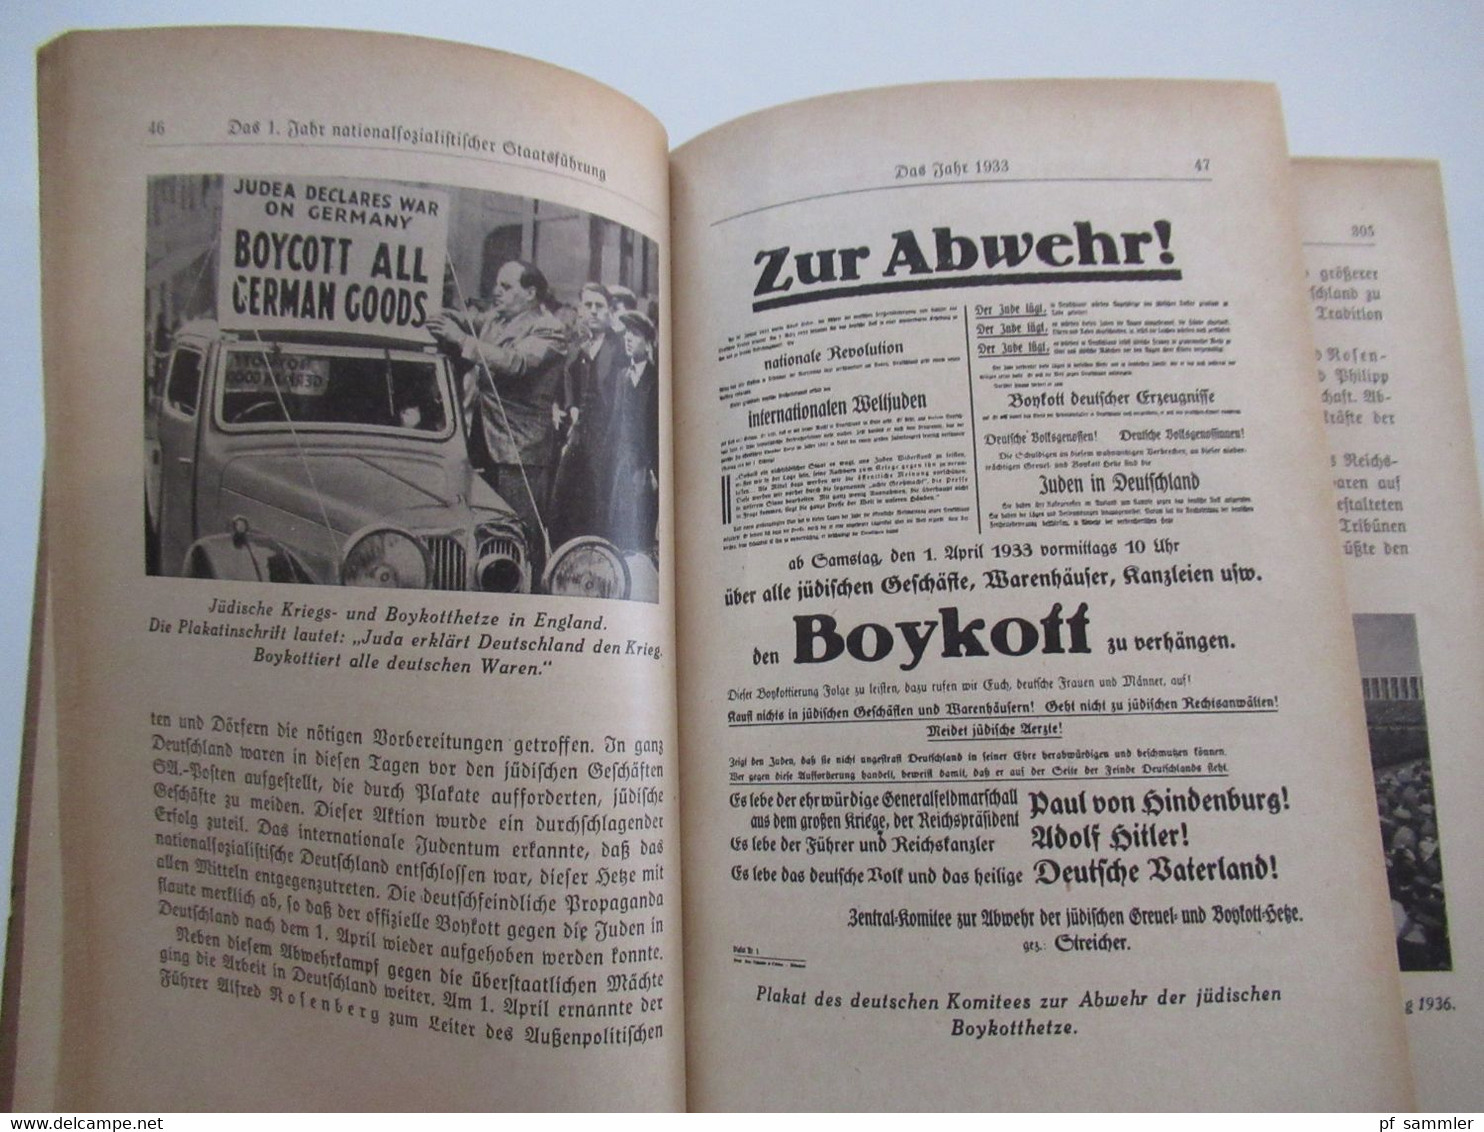 Zentralverlag der NSDAP München 1943 Dokumente des Dritten Reiches 2. Band von Fritz Maier Hartmann / NS Propaganda